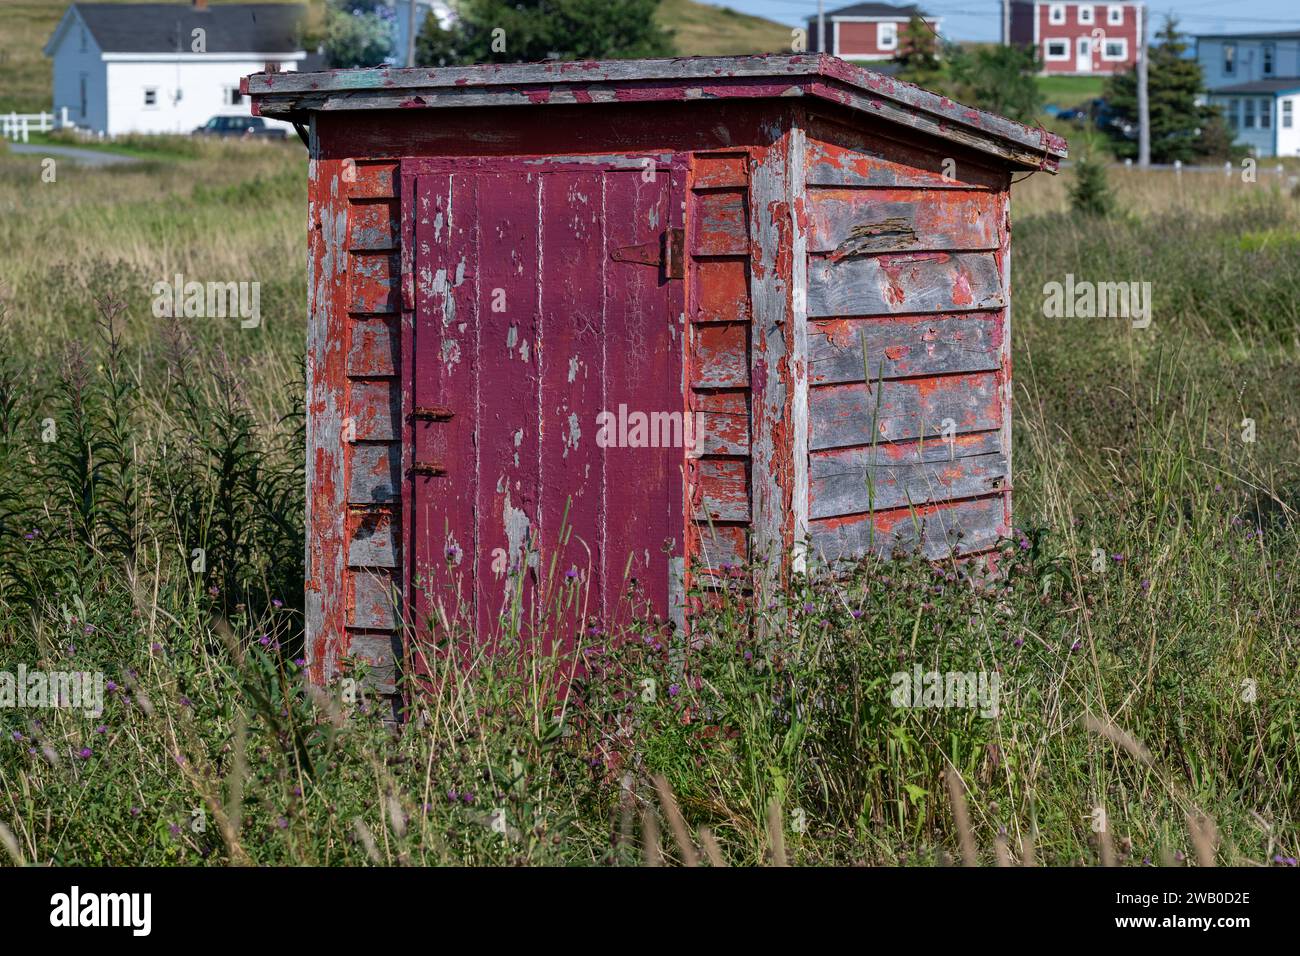 L'esterno di un bagno vintage rosso brillante o privato. La vecchia toilette esterna in legno ha un rivestimento in legno alle pareti, una maniglia o una serratura vintage Foto Stock